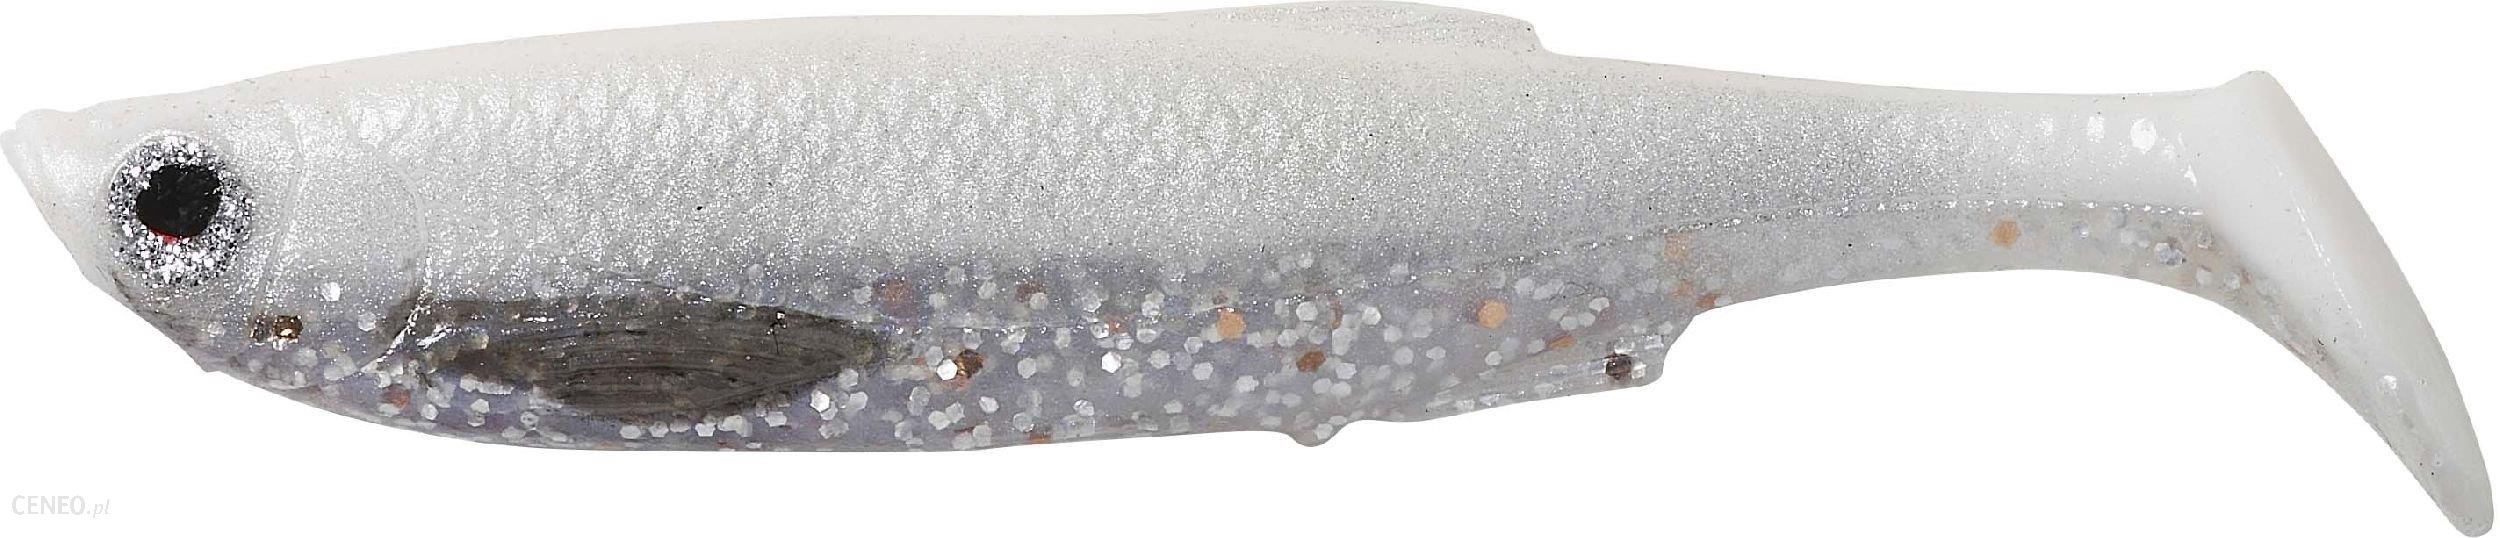 Svendsen 3D Bleak Paddle Tail 13cm 20g White Silver (61837)